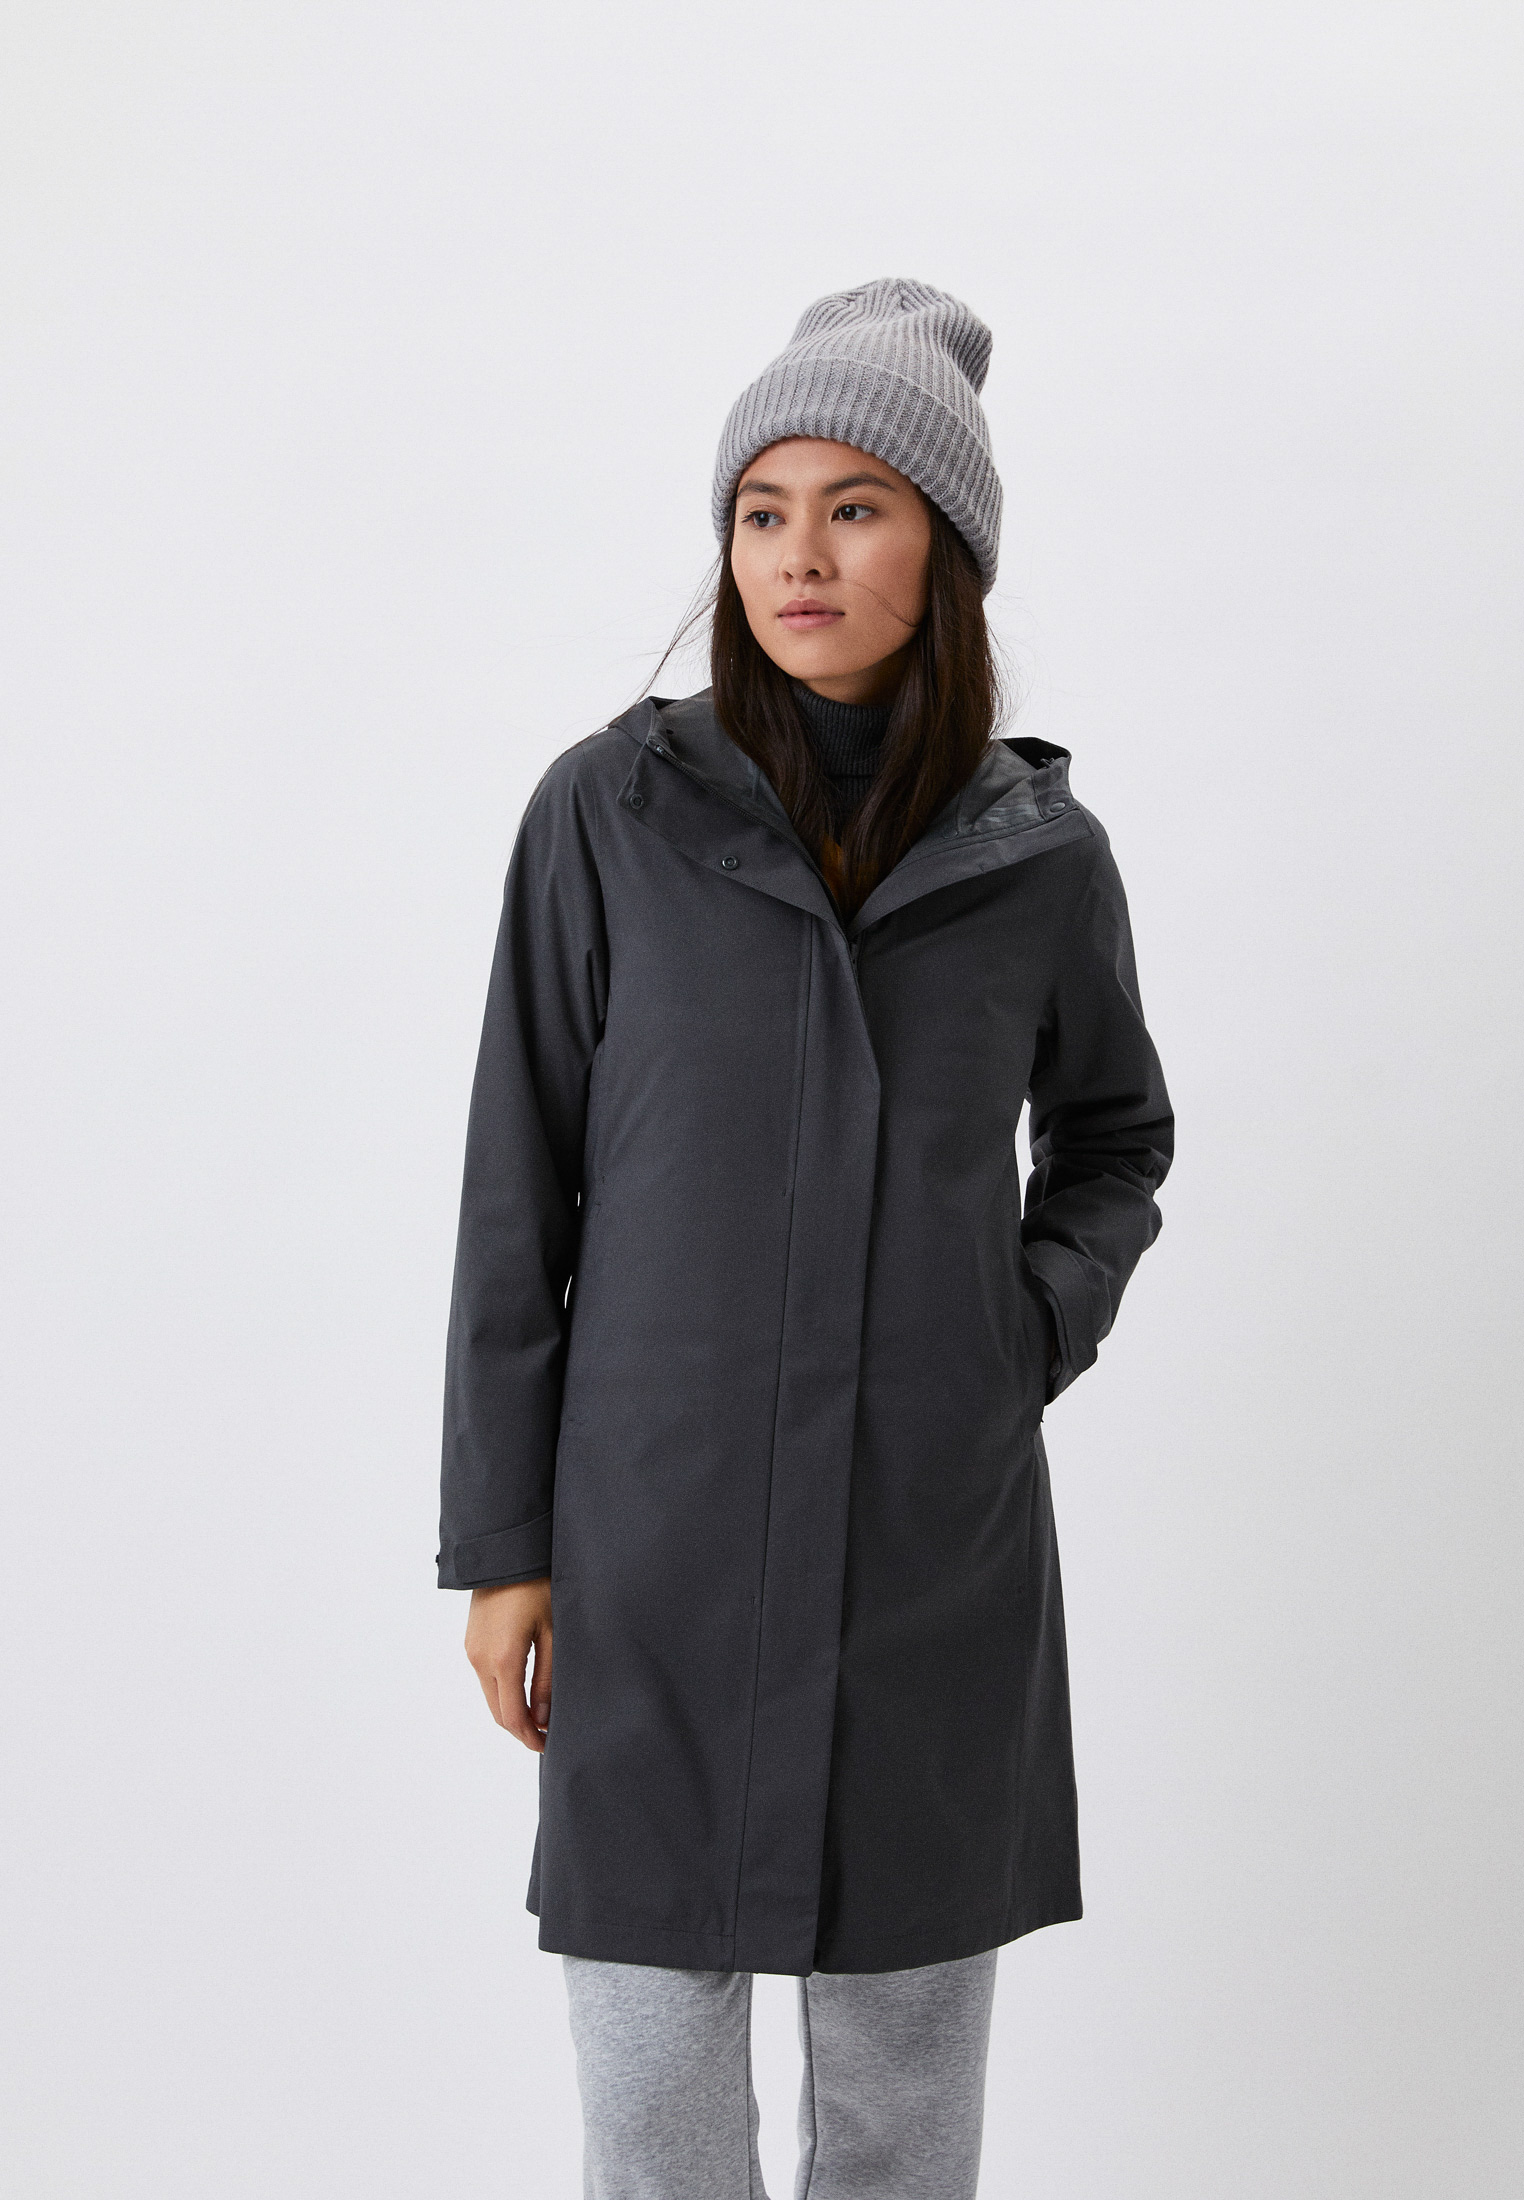 Пальто UNIQLO BLOCKTECH, цвет: серый, RTLABW757501 — купить в  интернет-магазине Lamoda